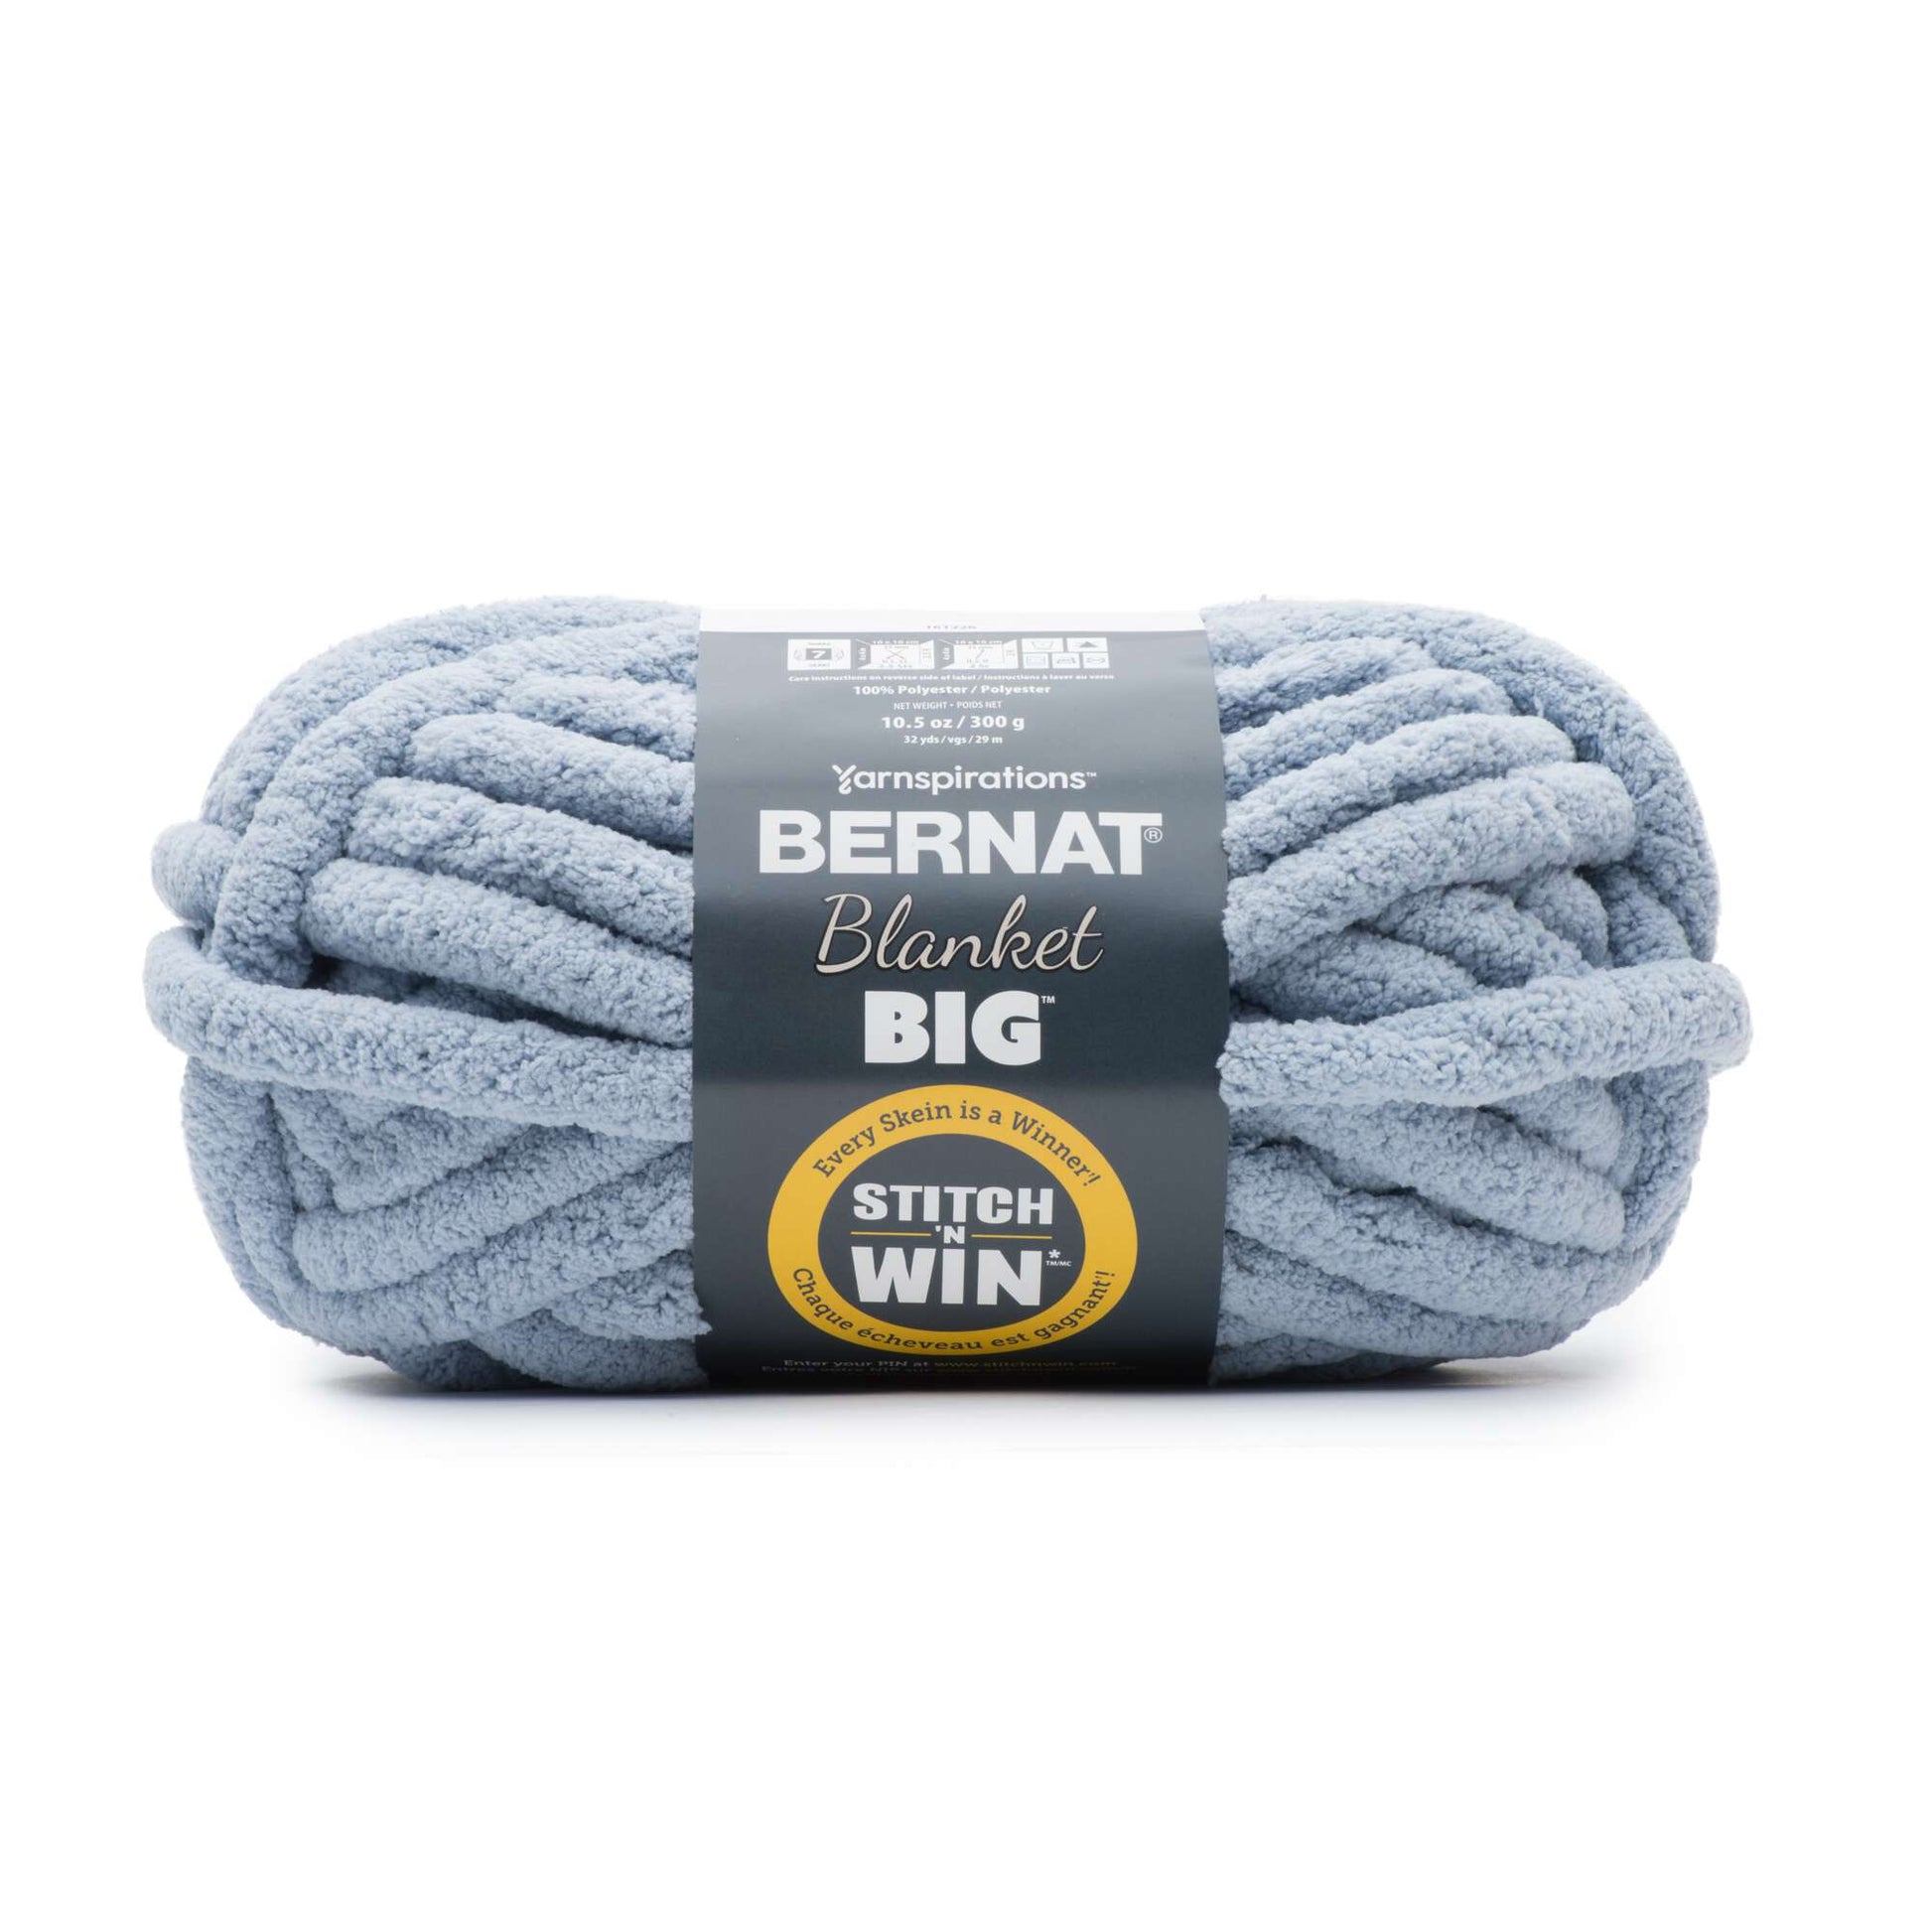 CINNAMON Bernat Blanket BIG Yarn, 10.5 Oz /300 G, 32 Yards/29m, Jumbo Size  7 bulk Rate Shipping 